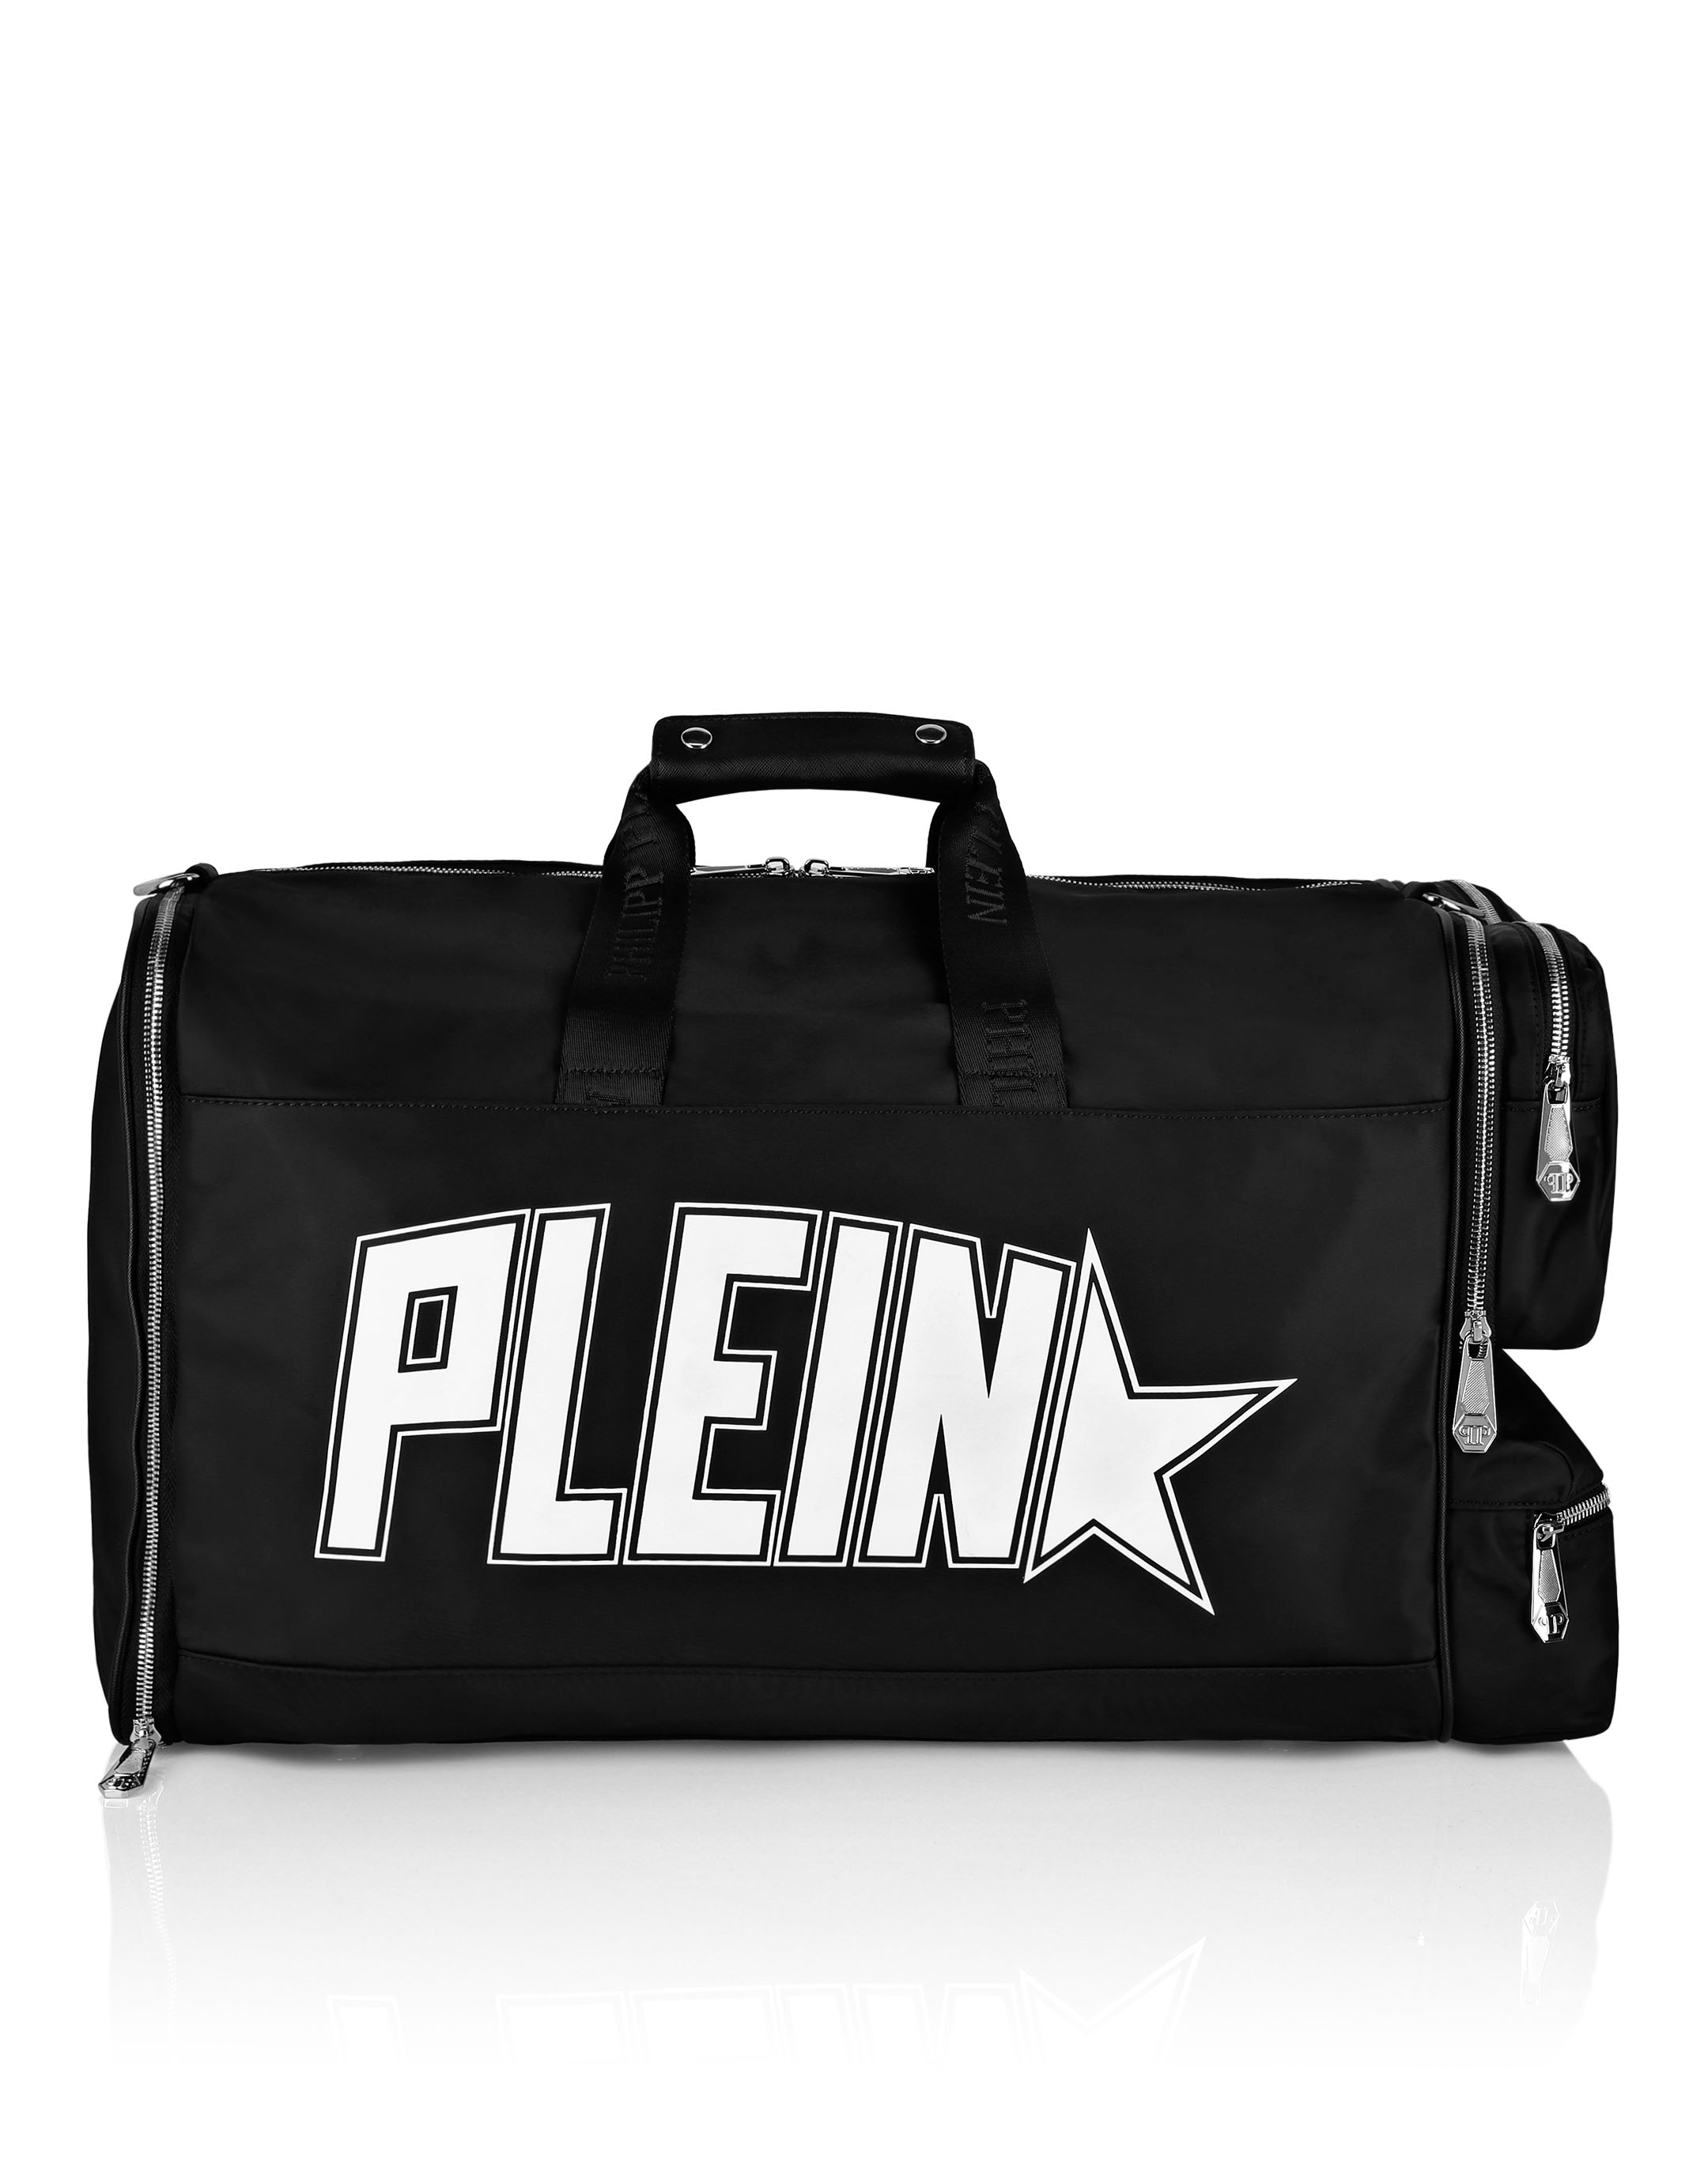 Nylon Gym Bag Iconic Plein | Philipp Plein Outlet